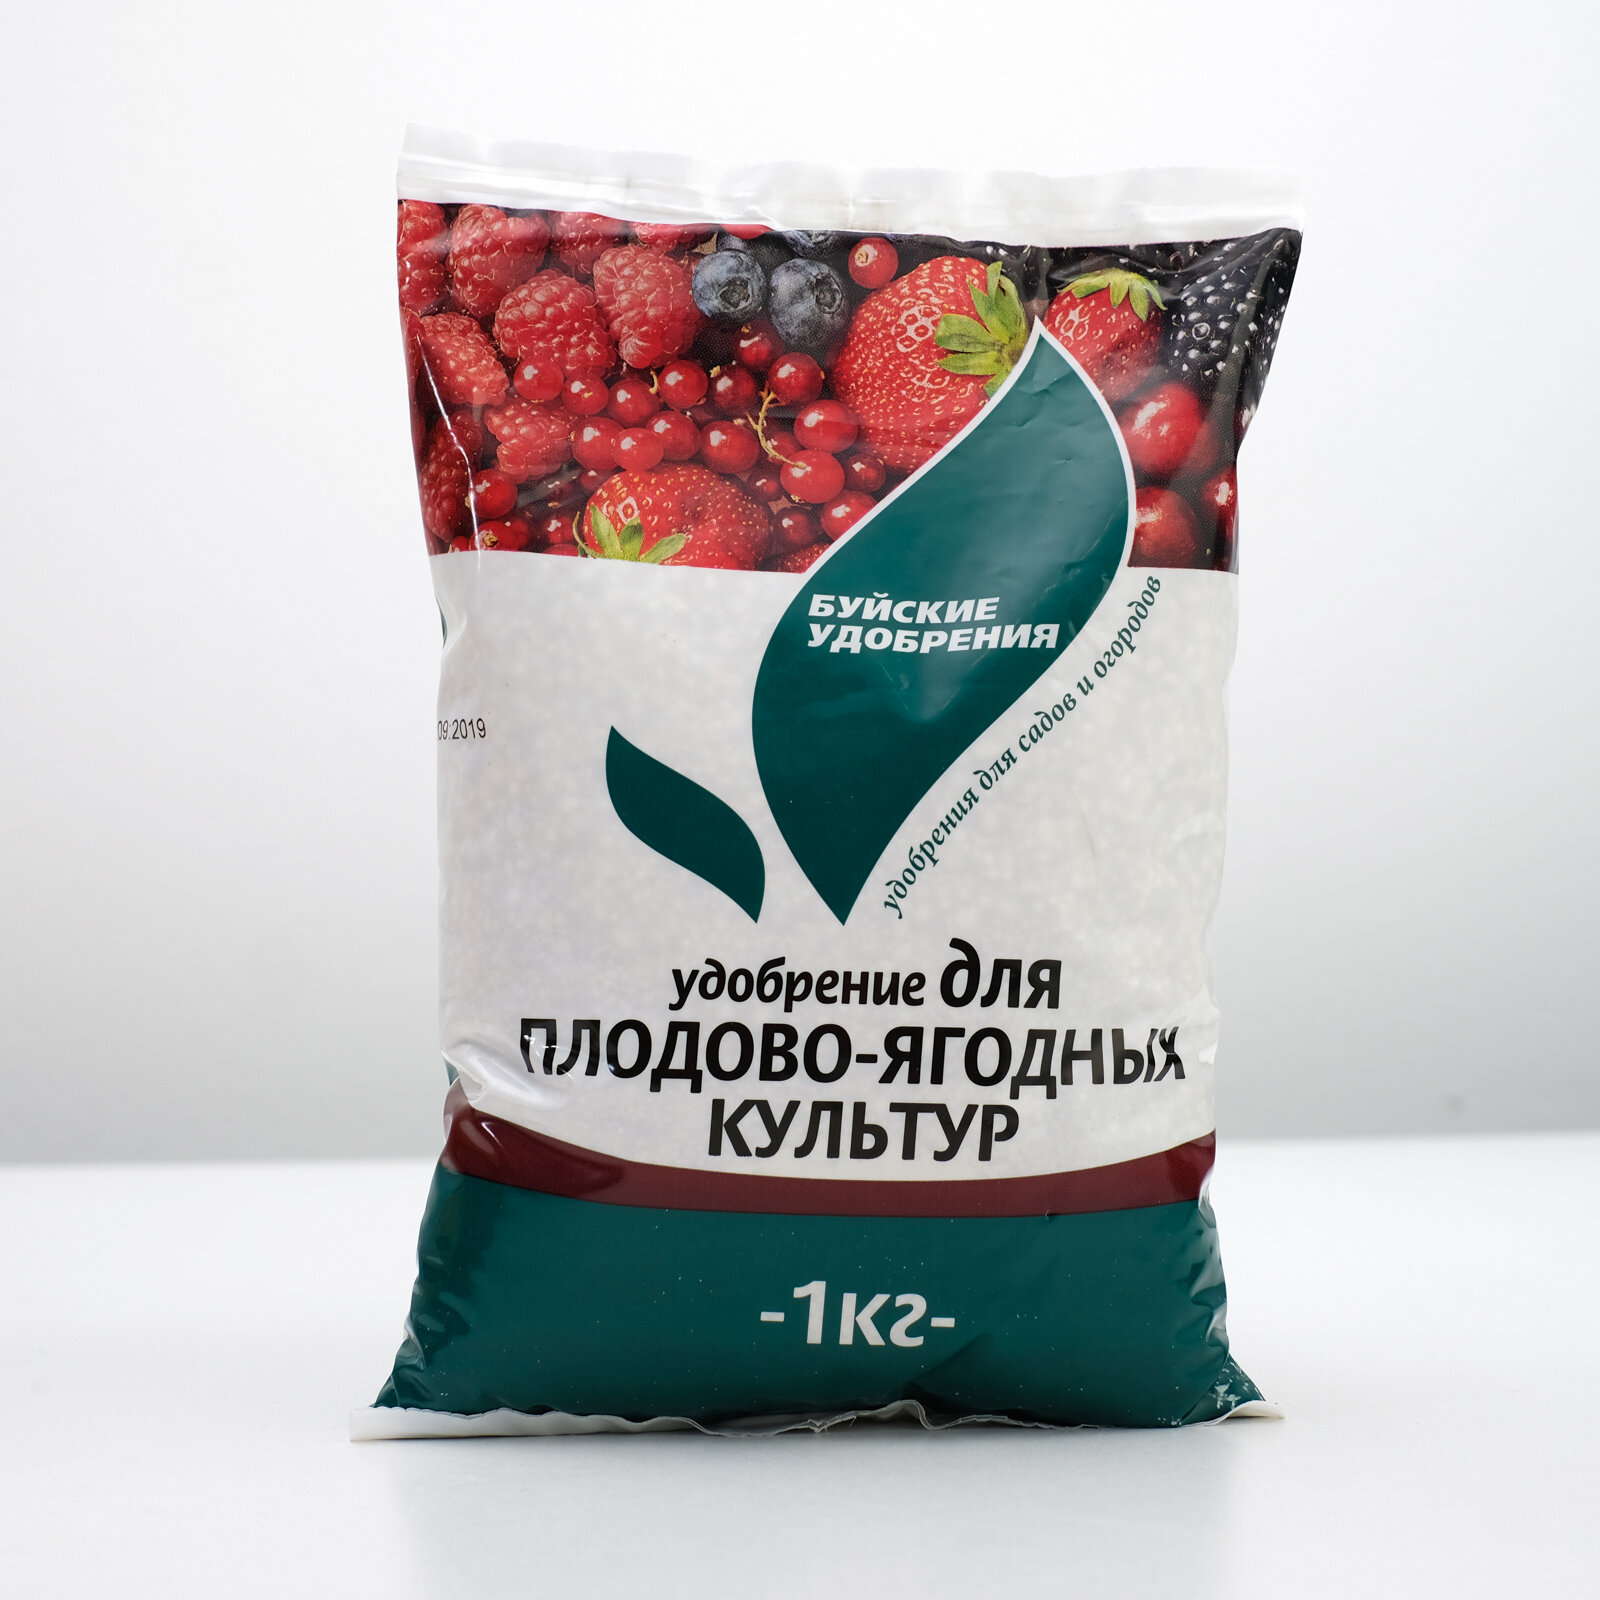 Удобрение для плодово-ягодных БХЗ (1кг)